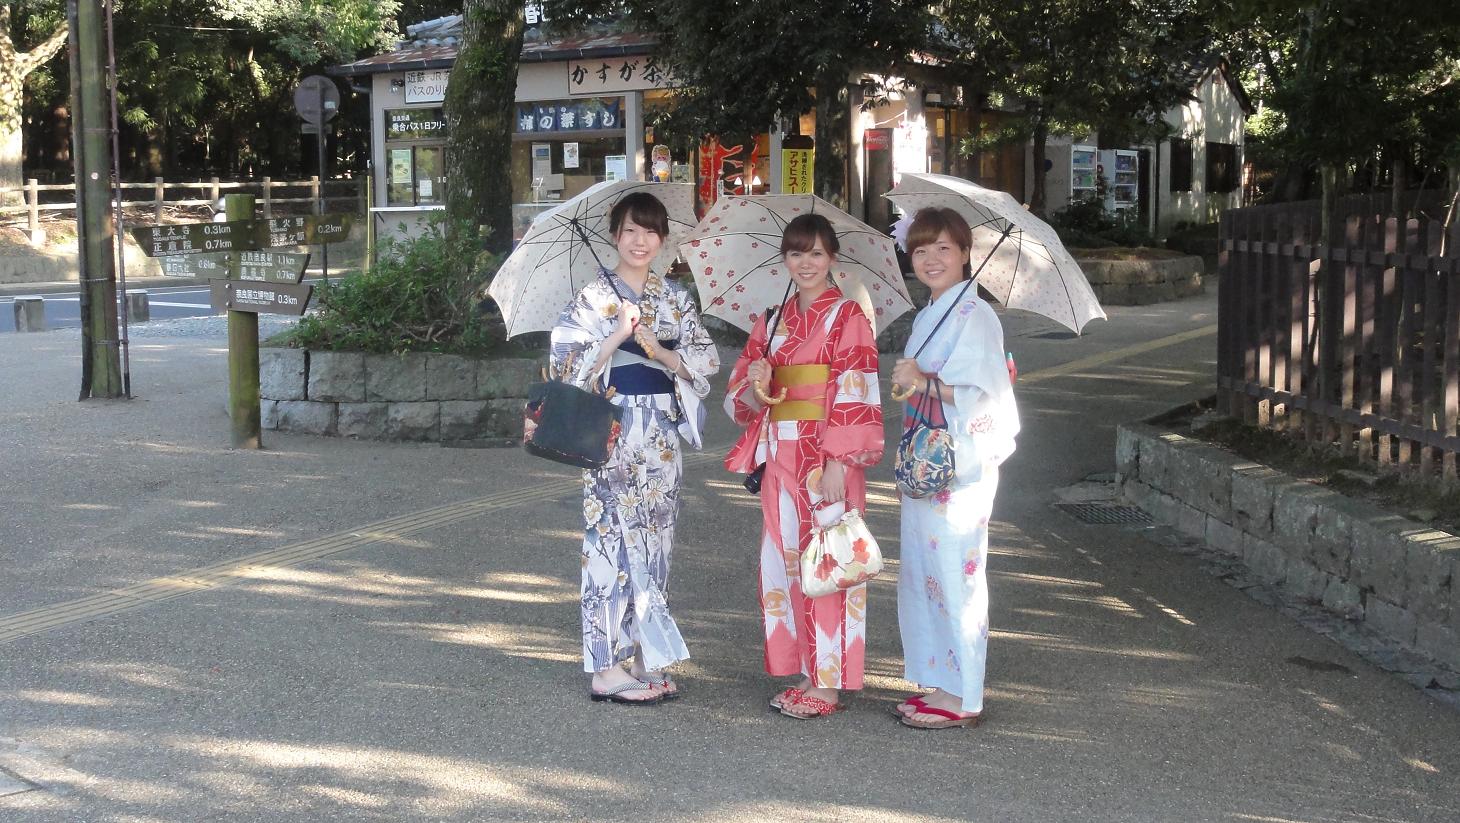 Girls of nara japan